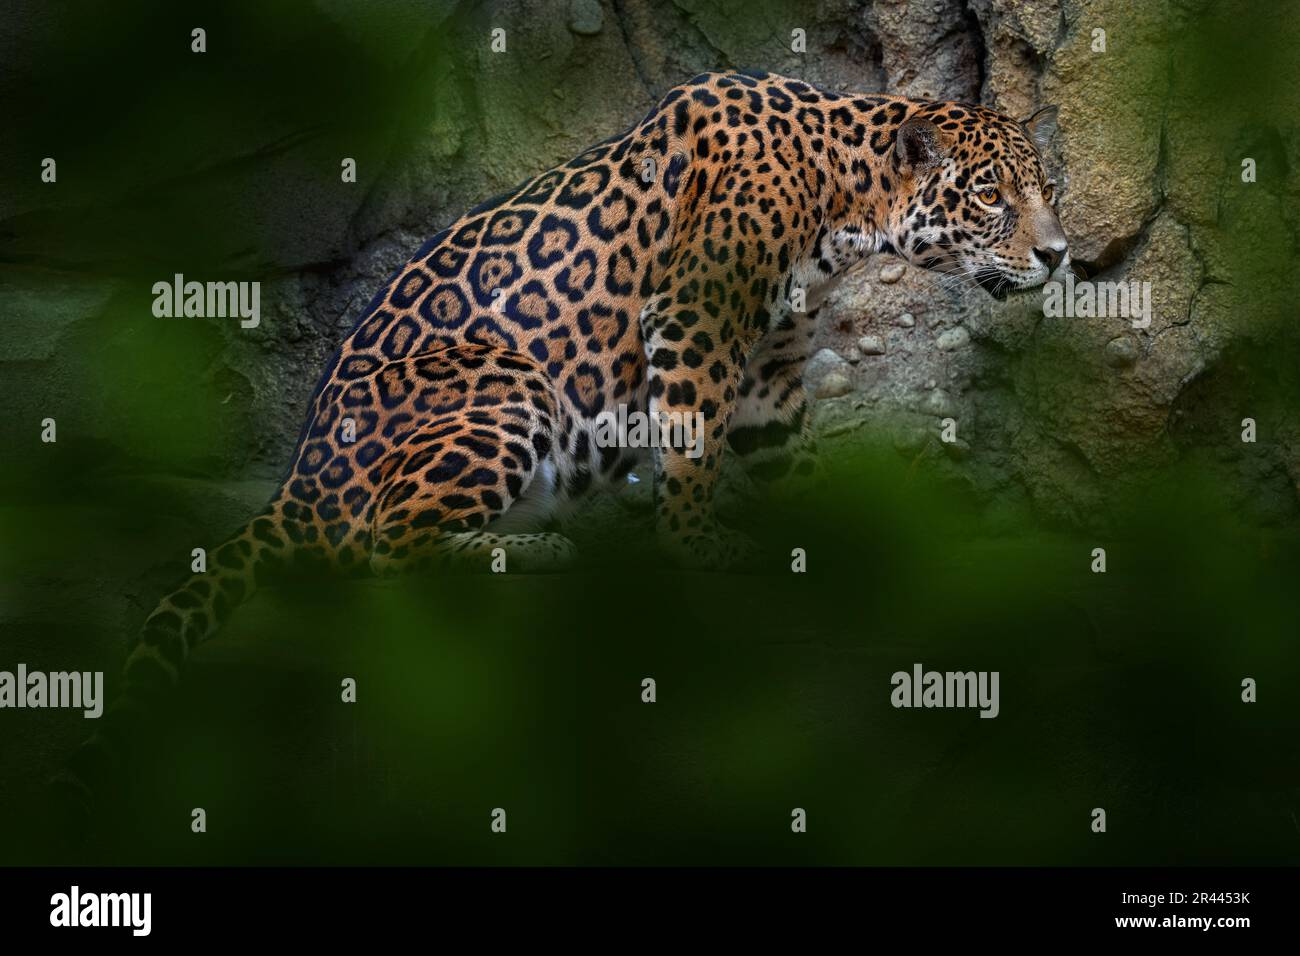 Jaguar nella natura, gatto selvatico in habitat, Porto Jofre in Brasile. Giaguaro in verde vegetazione, riva del fiume con roccia, hiden in albero. Hunter dentro Foto Stock